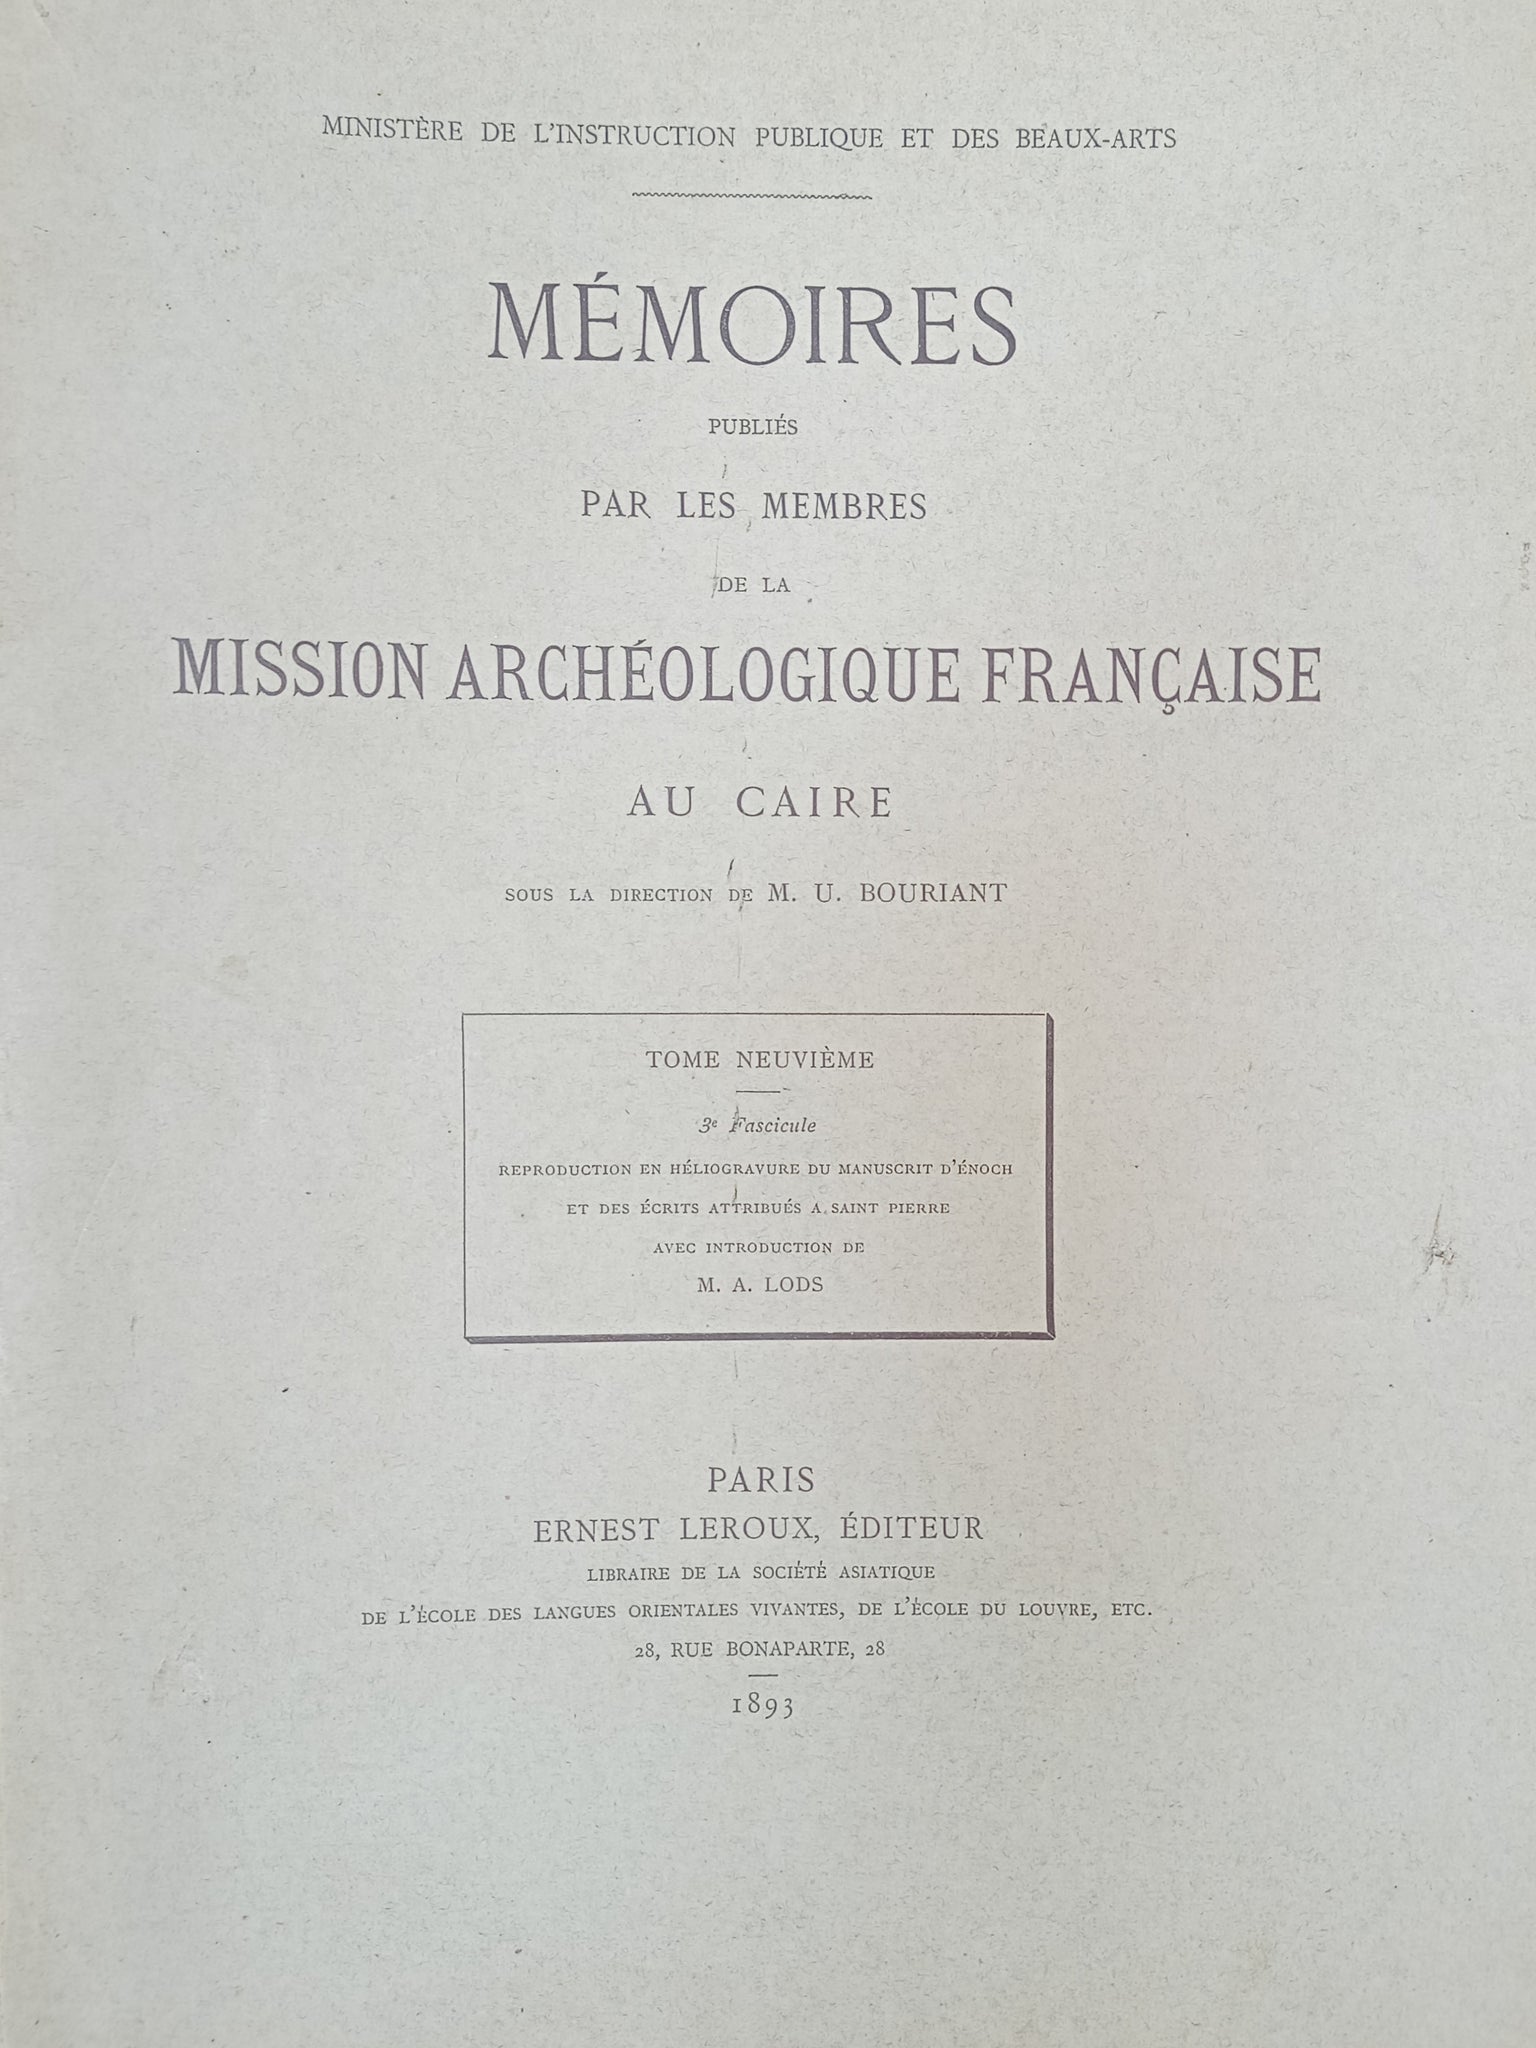 Reproduction en héliogravure du manuscrit d'Enoch et des écrits attribués à Saint-Pierre avec introduction de M. A. Lods. MMAF tome neuvième, 3e fascicule.